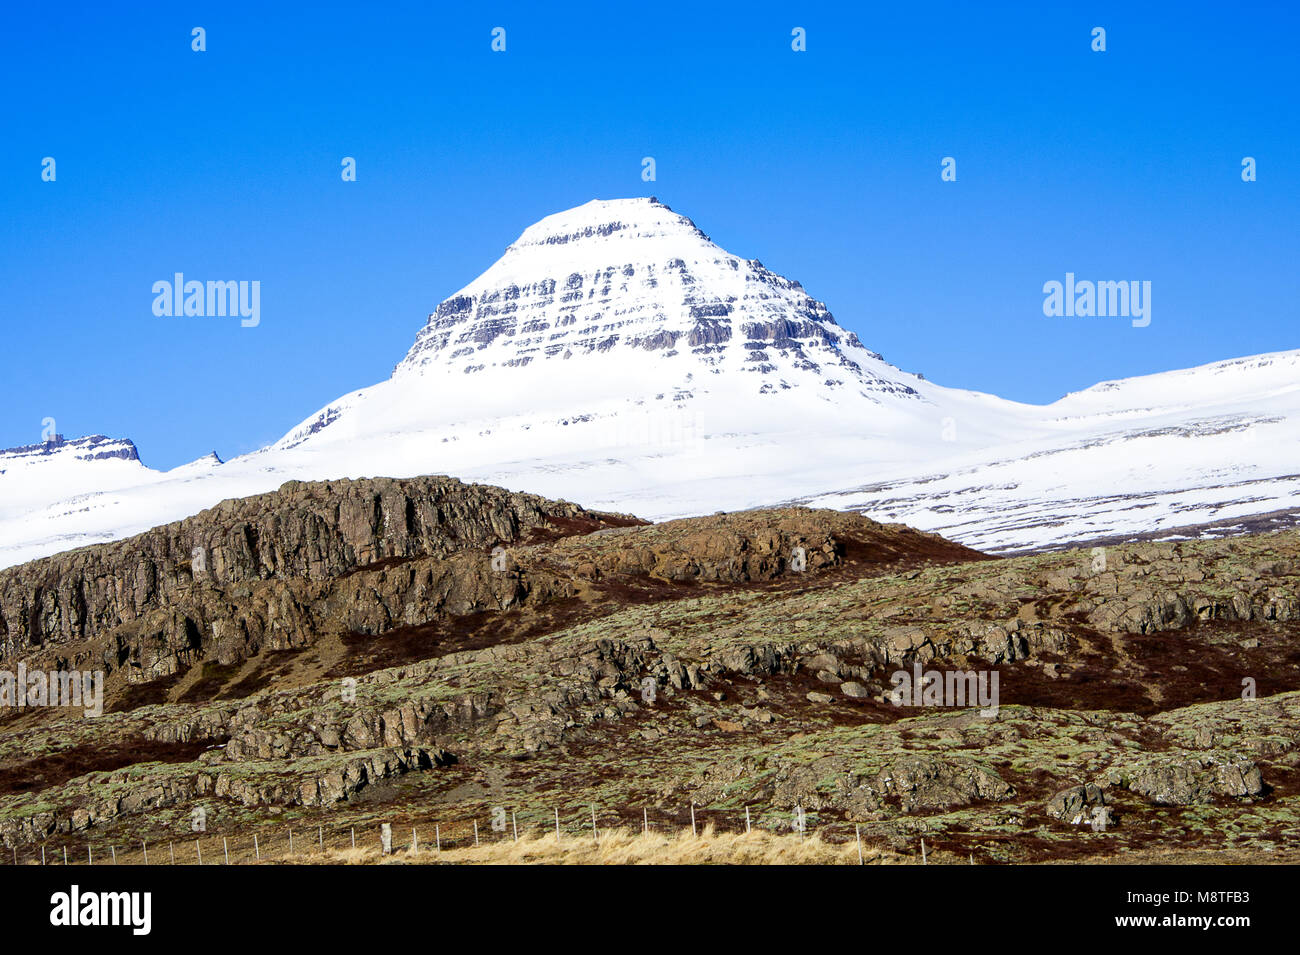 Contraste frappant de pics couverts de neige, blanc et coloré, strié, formations rocheuses à l'avant-plan. Beaux Fjords de l'Est de l'Islande, paysage Banque D'Images